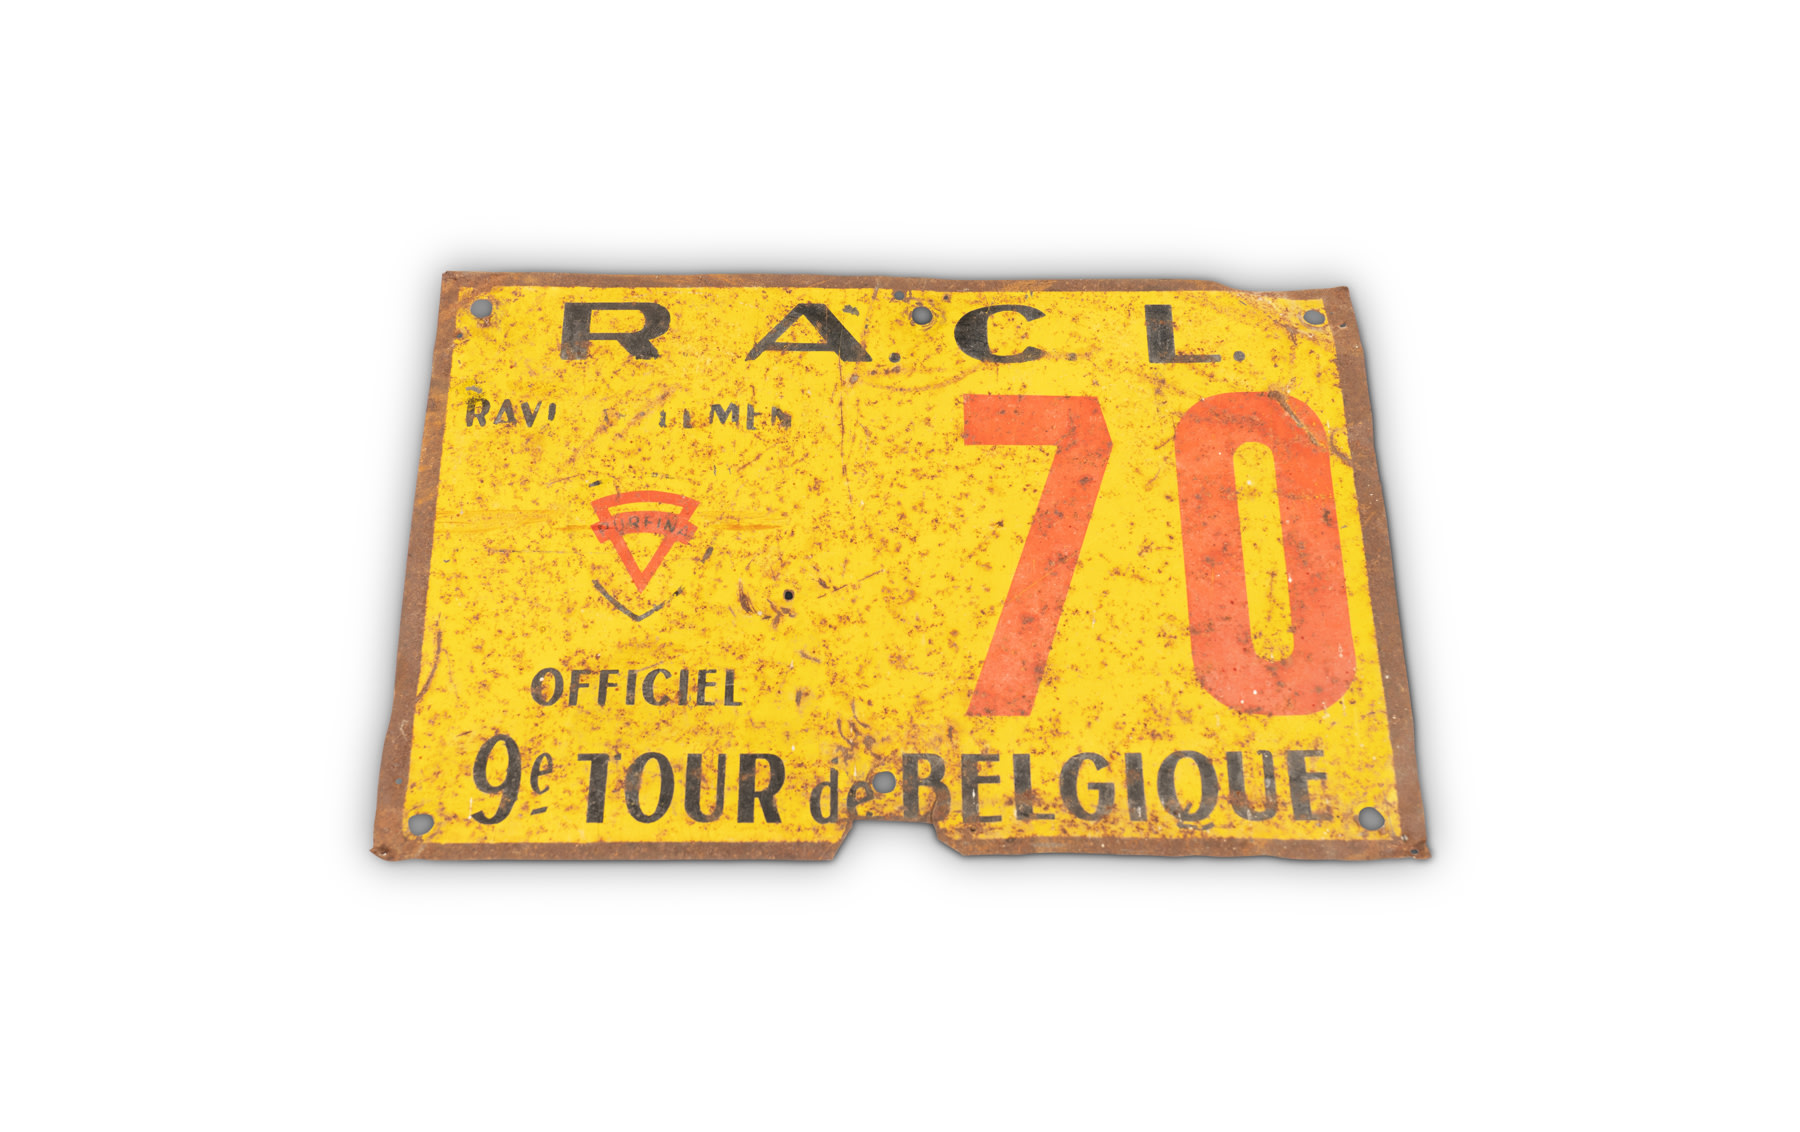 RACL 9th Tour de Belgique Entrant Plate